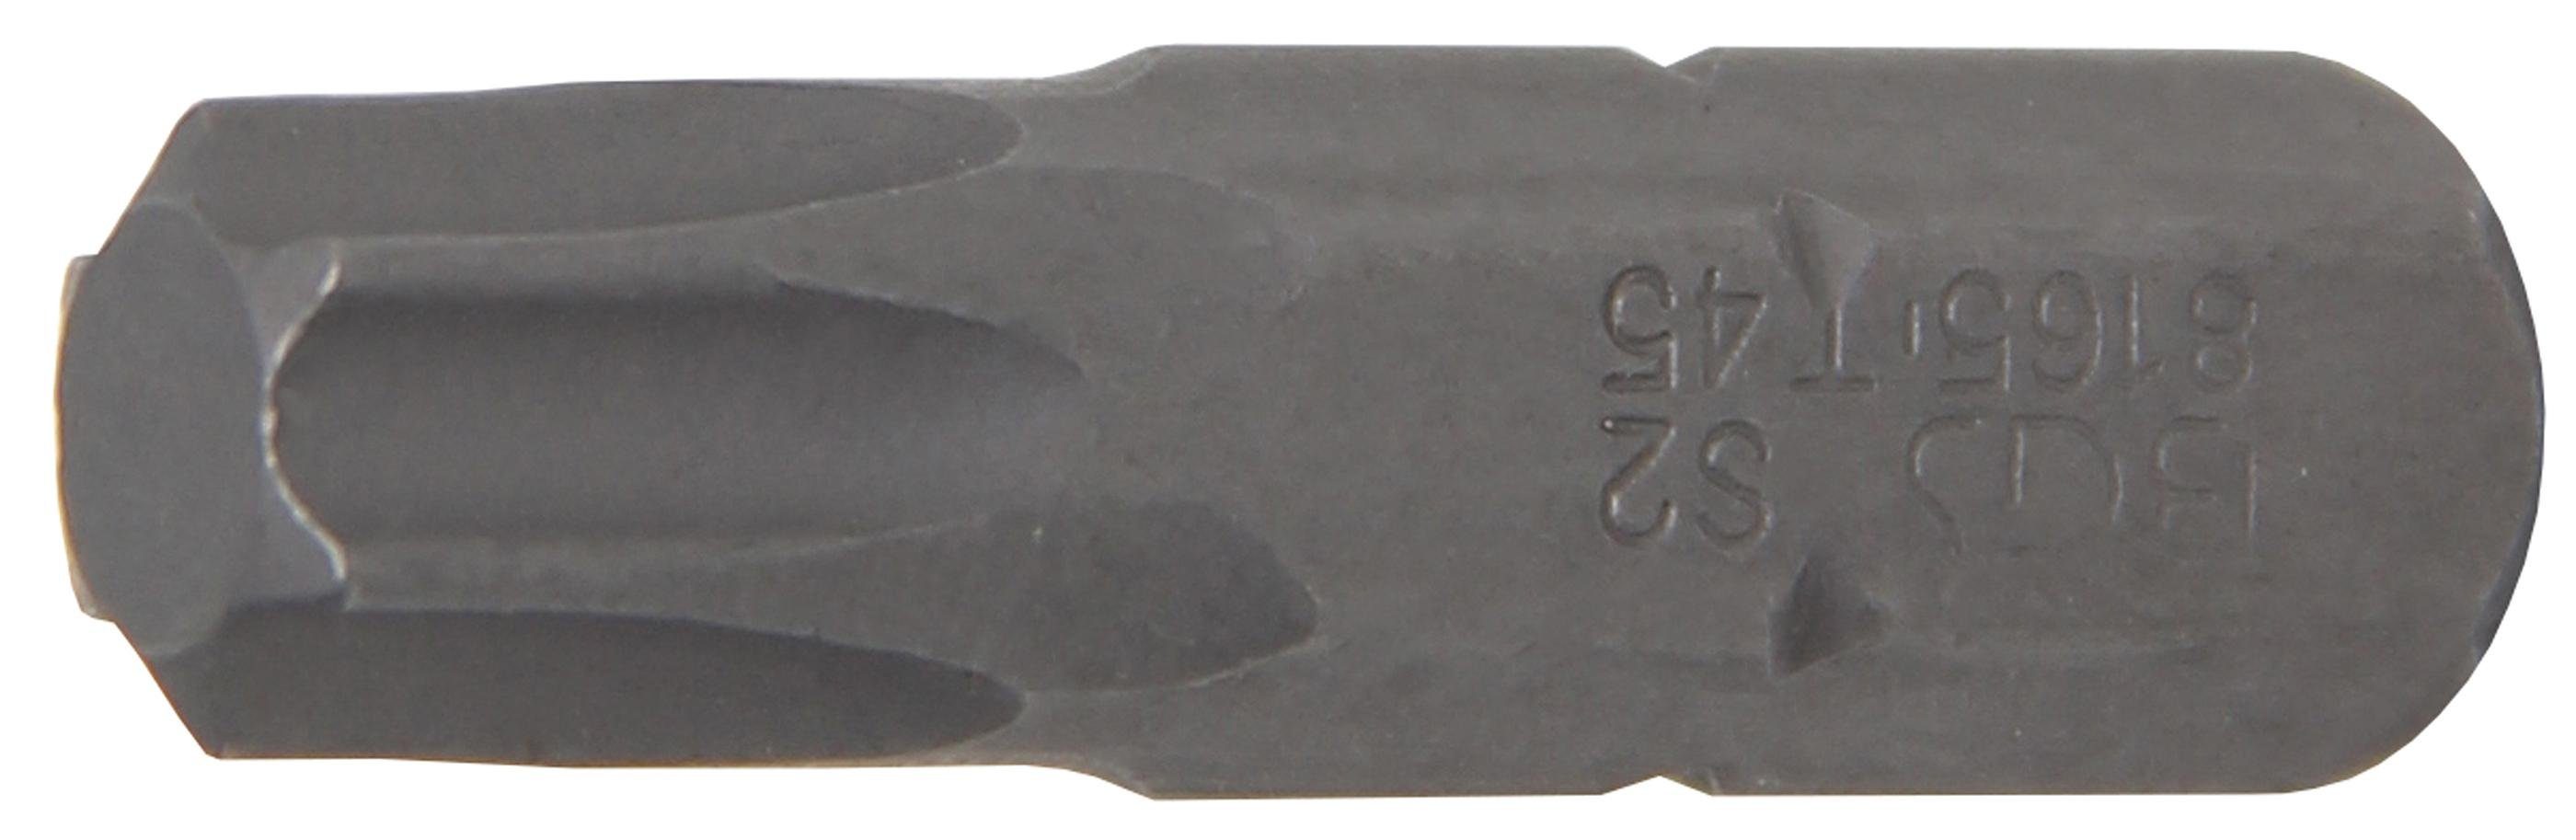 BGS technic Bit-Schraubendreher Bit, Antrieb Außensechskant 8 mm (5/16), T-Profil (für Torx) T45